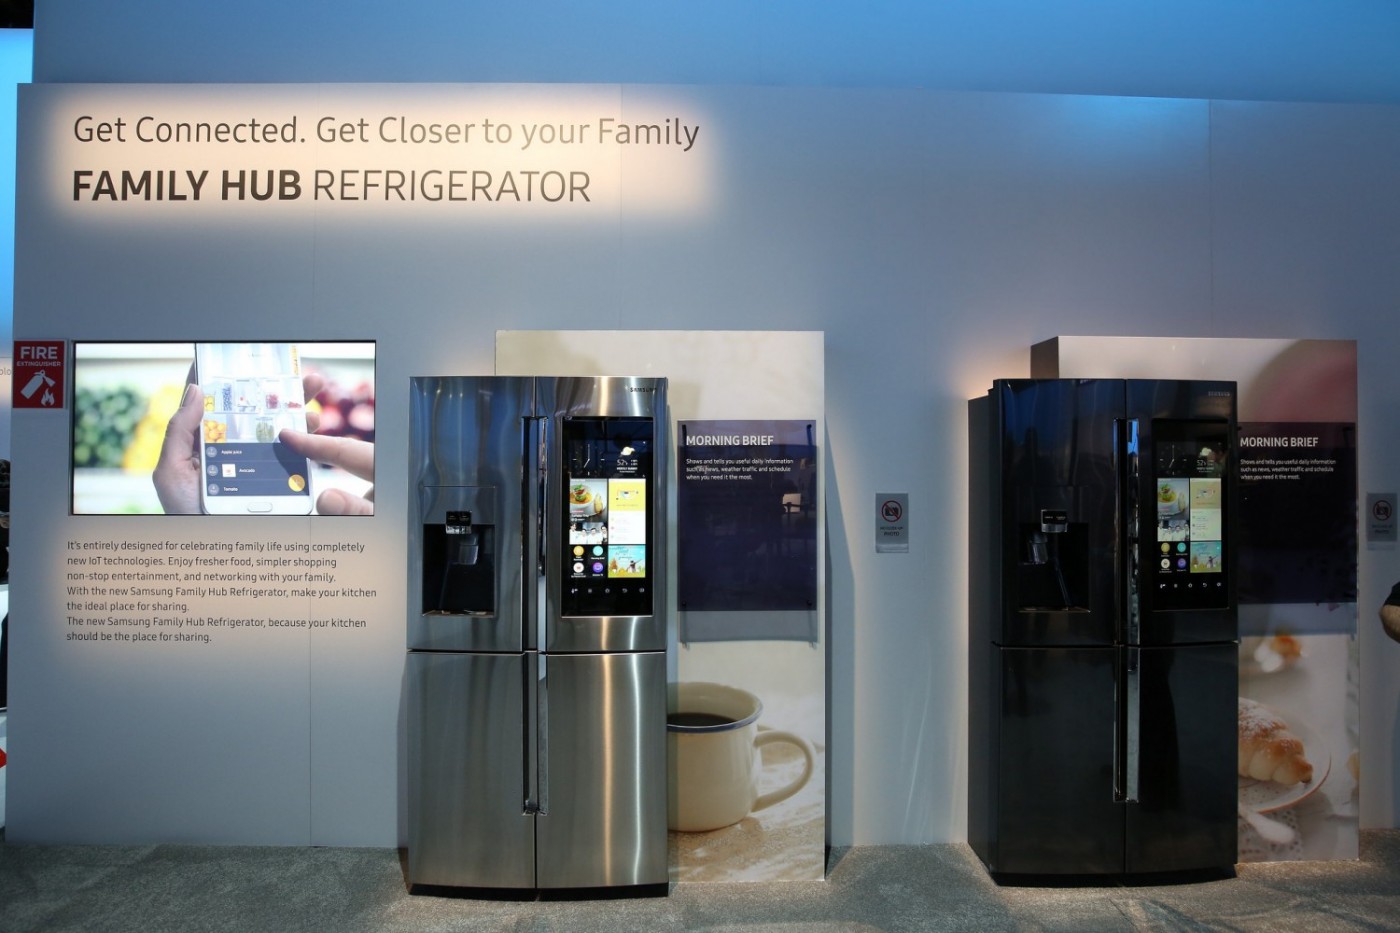 Smart home, family hub refrigerator, samsung, smart refrigerator